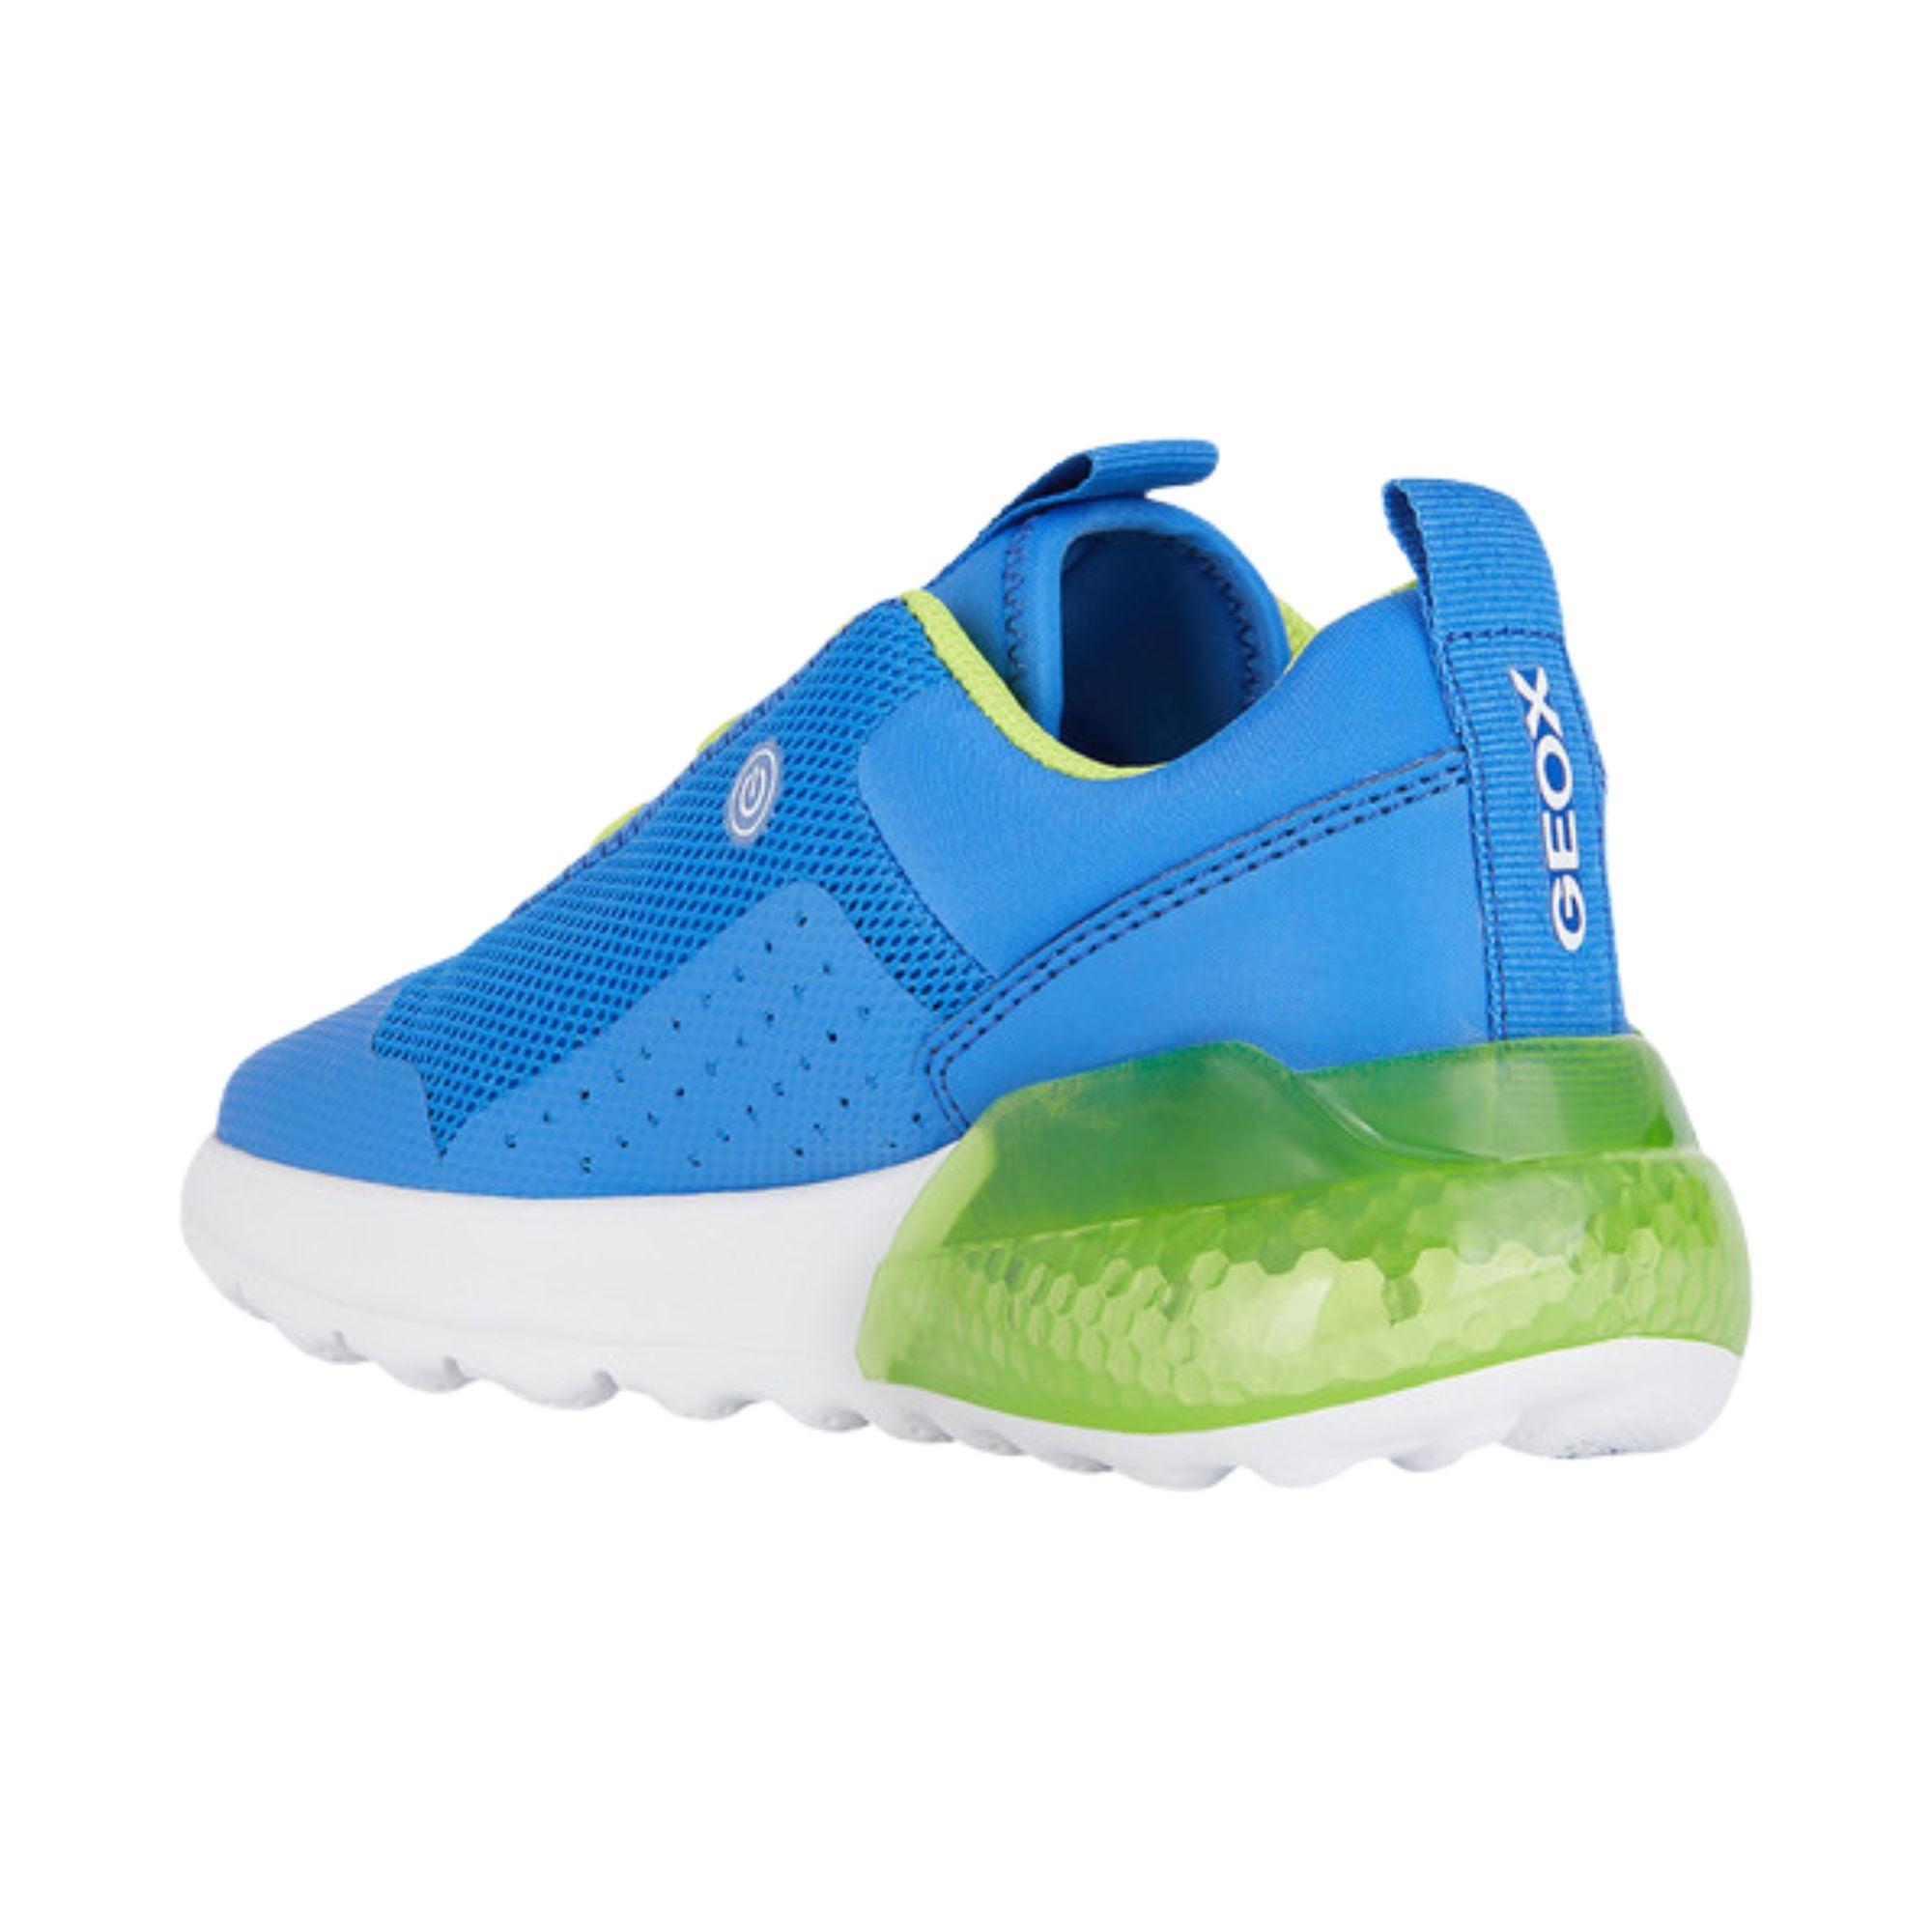 Geox Activart Illuminus Blue Sneakers